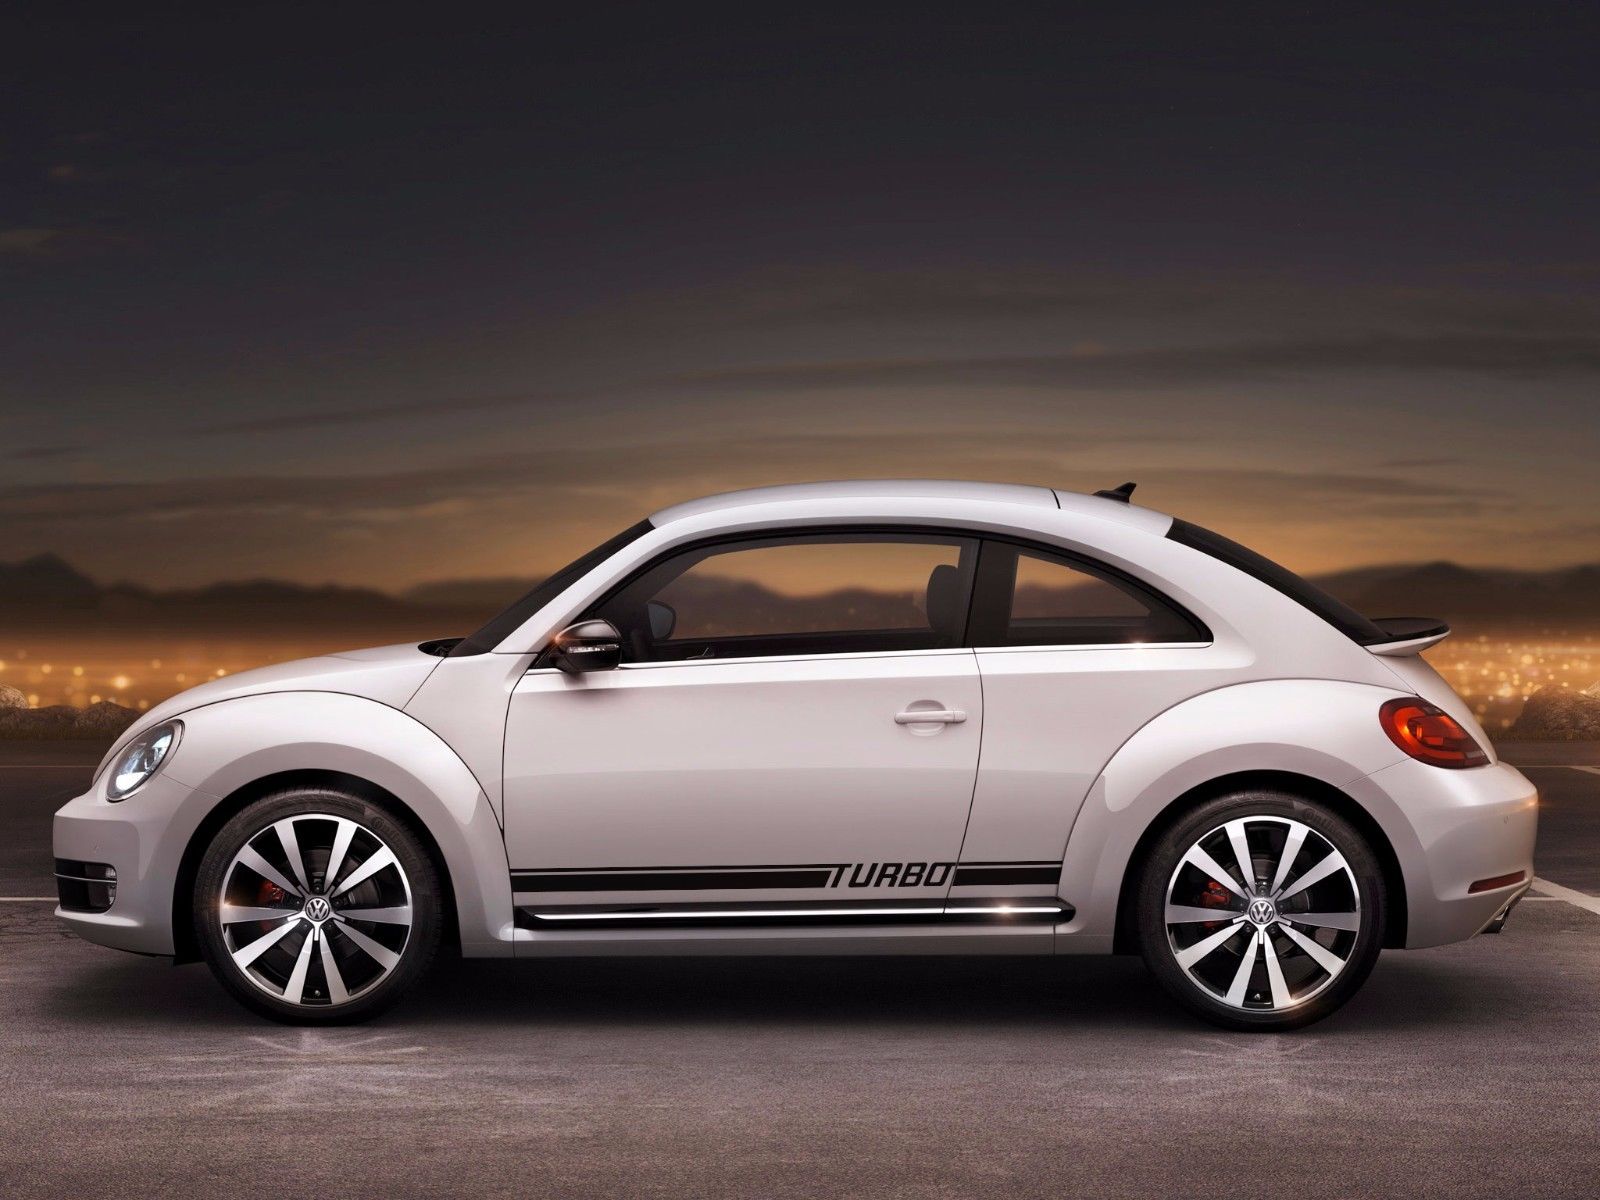 Motorhaubenstreifen-Aufkleber für jedes Jahr, exklusiver Design-Aufkleber  für Volkswagen VW Golf R, Grafiken, 2 Farben